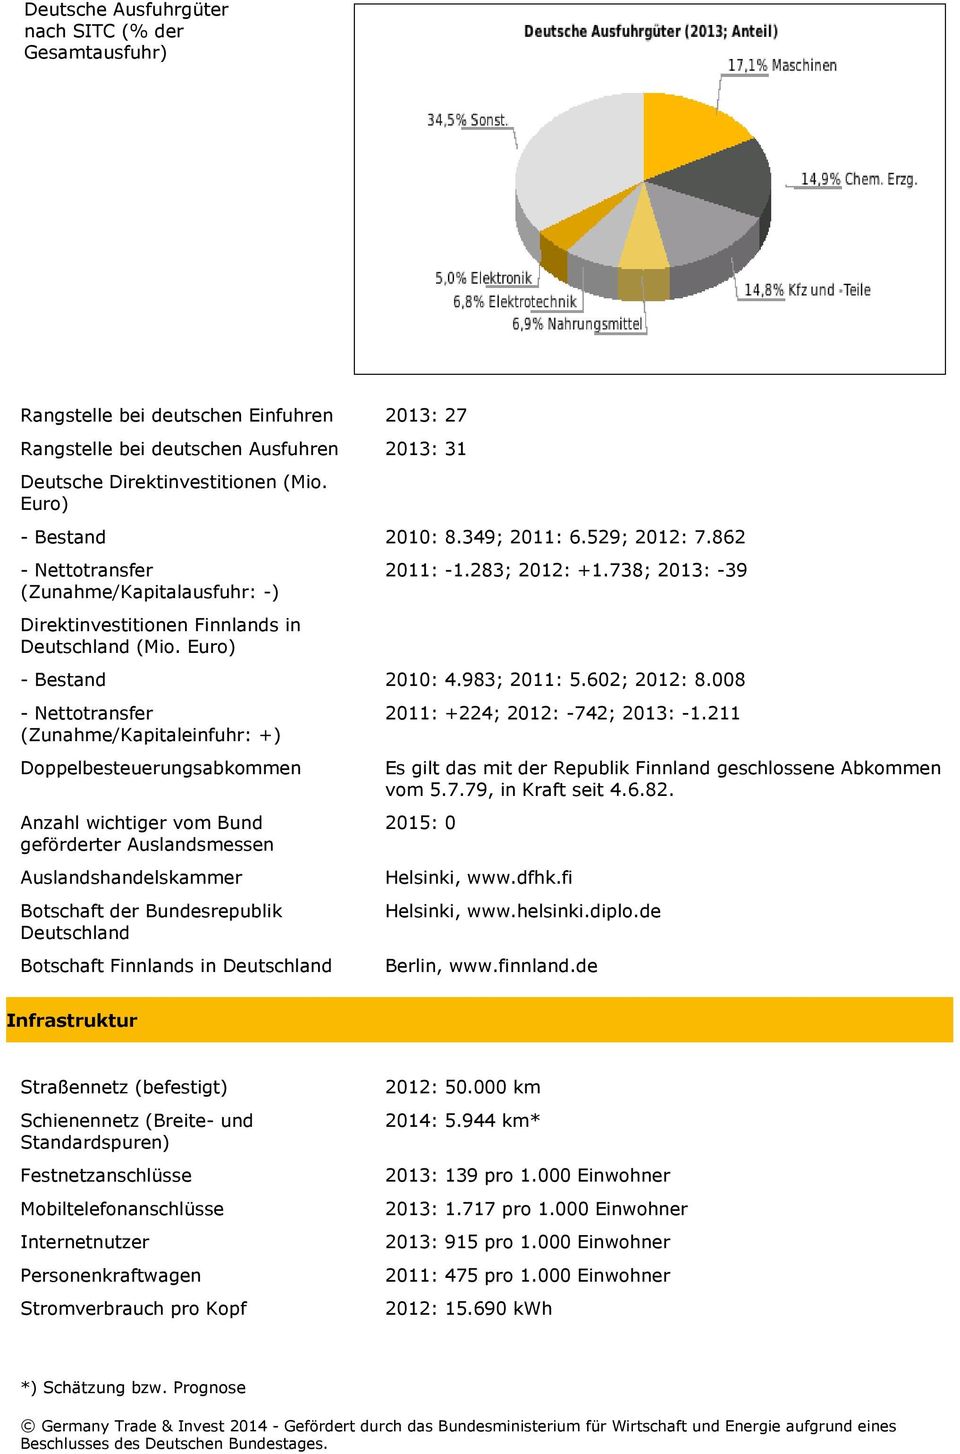 Euro) - Bestand 2010: 4.983; 2011: 5.602; 2012: 8.